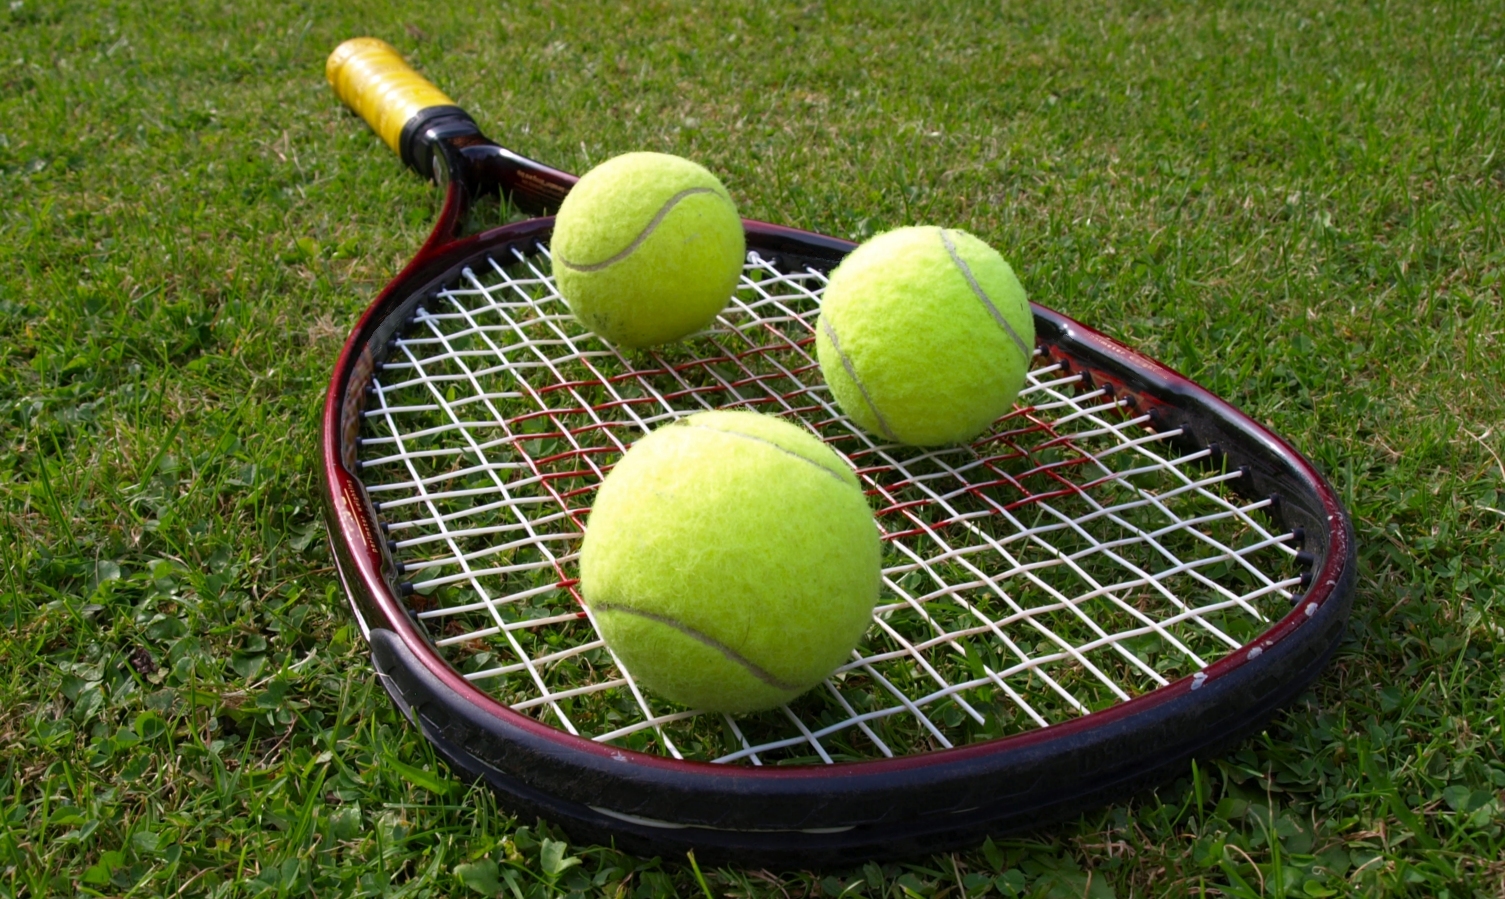 Теннисные конкурсы. Теннис. Ракетка для большого тенниса и мячик. Теннисная ракетка и мяч. Теннисный корт с мячом и ракеткой.